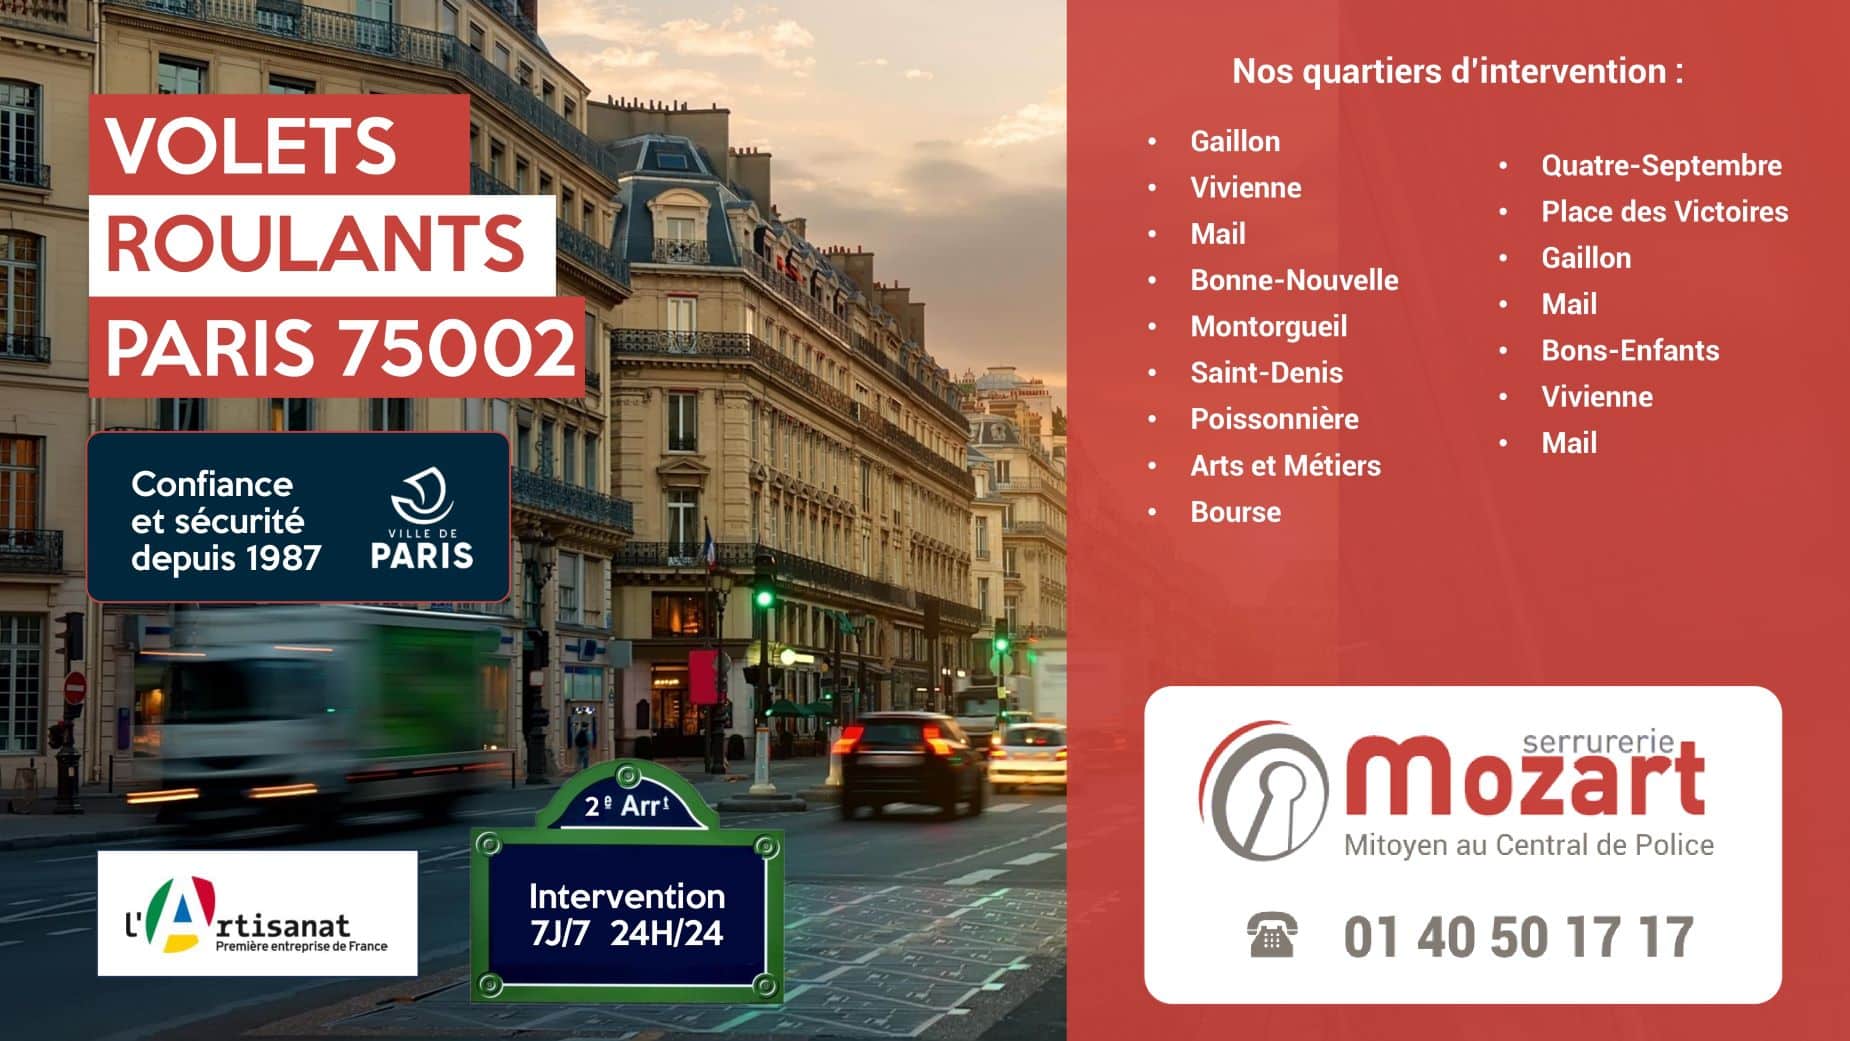 Serrurerie Mozart : Experts en volets roulants, 2e arrondissement de Paris - Rue de la Lune